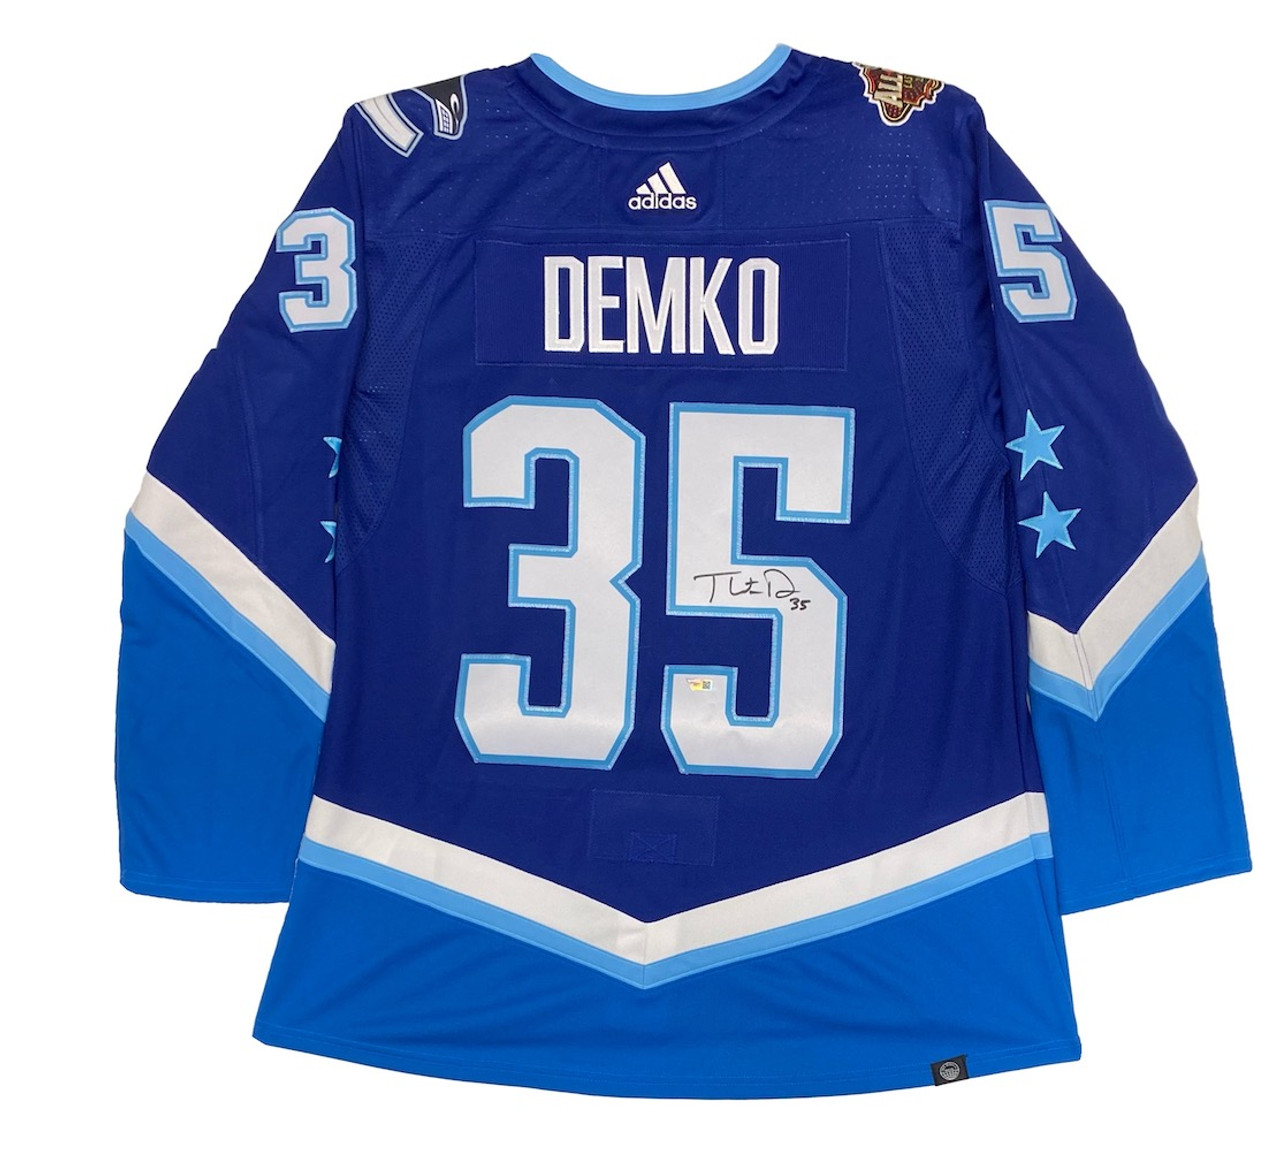 THATCHER DEMKO Autographed Vancouver Canucks Authentic Blue Alt. Jersey  FANATICS - Game Day Legends